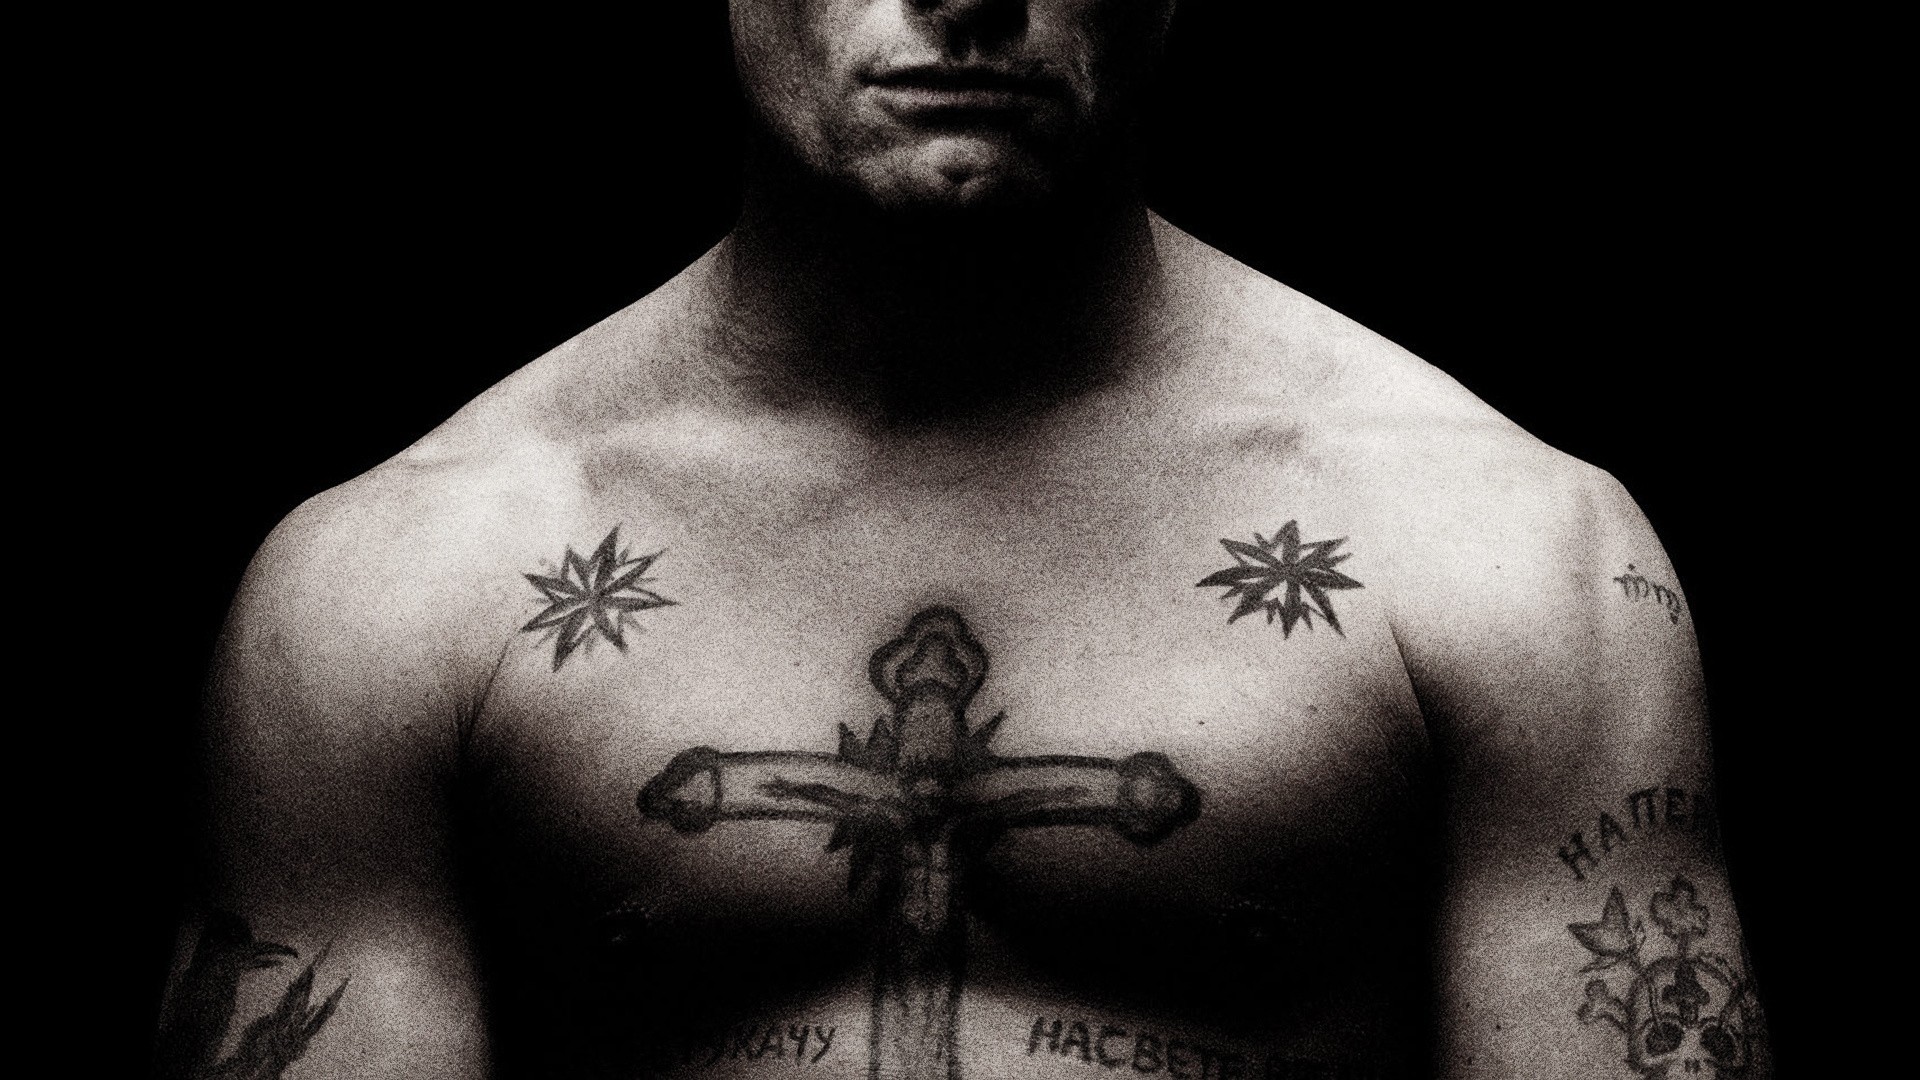 People 1920x1080 Mafia tattoo muscles Russian prison men Viggo Mortensen